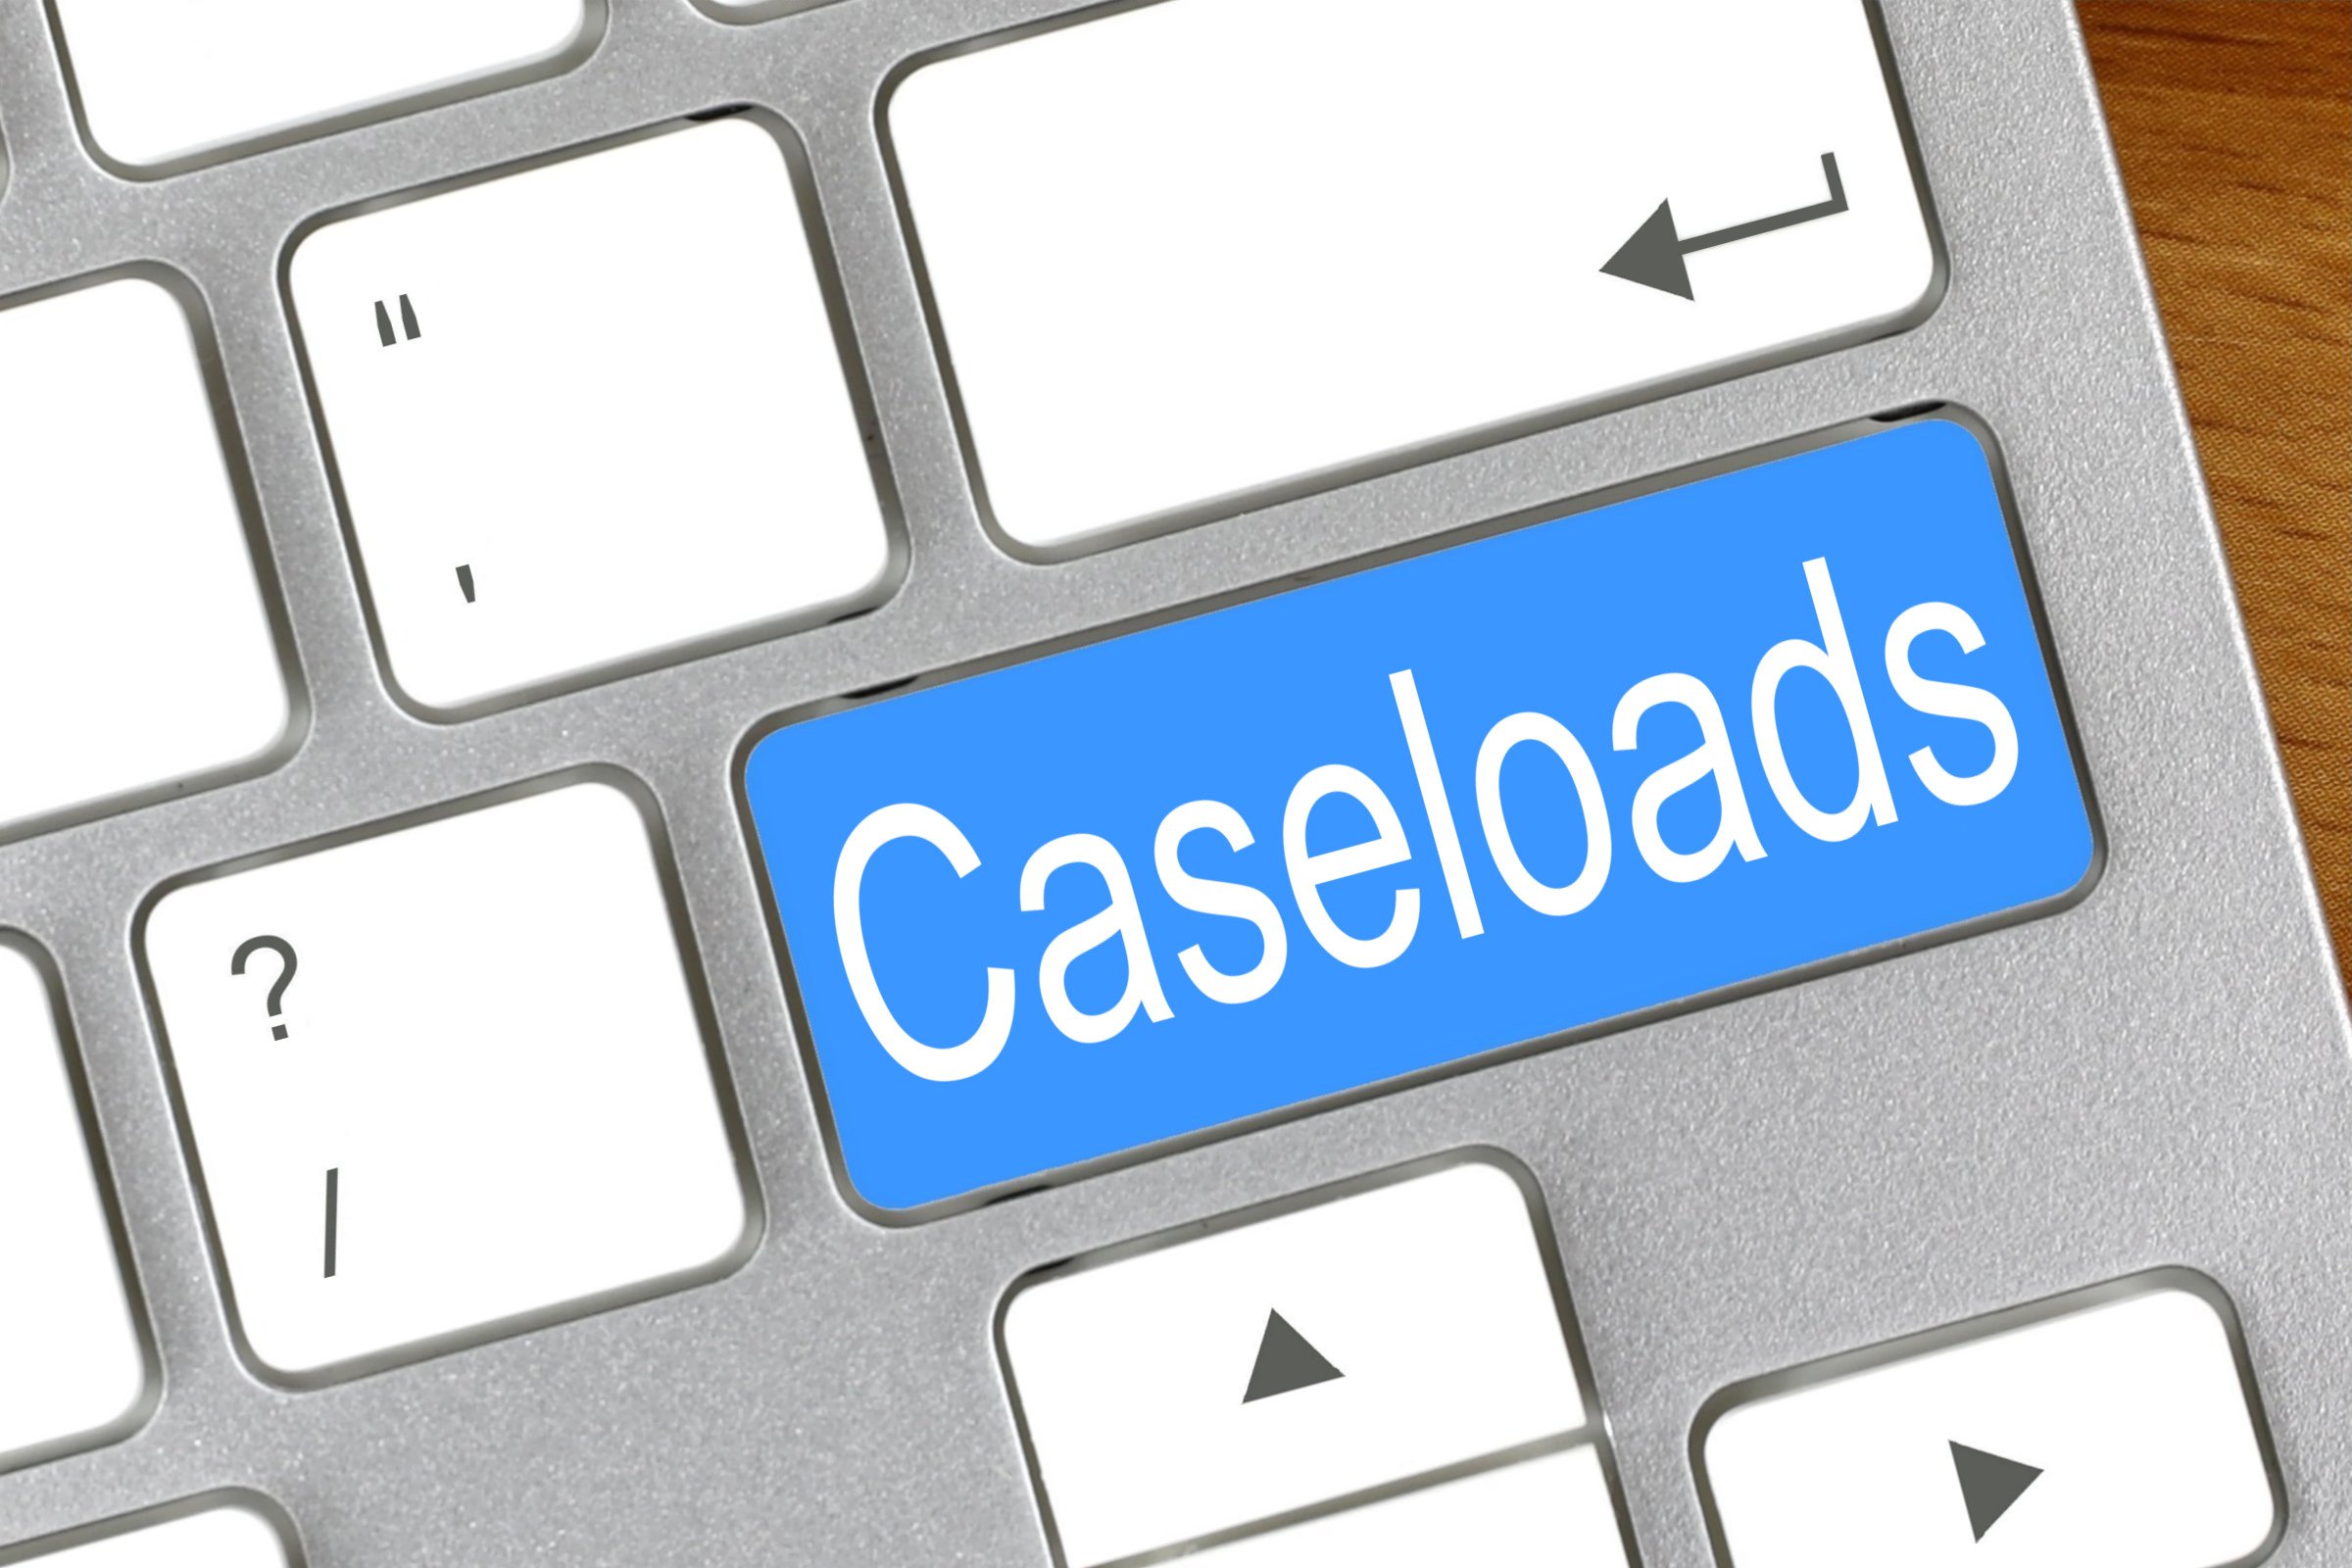 caseloads